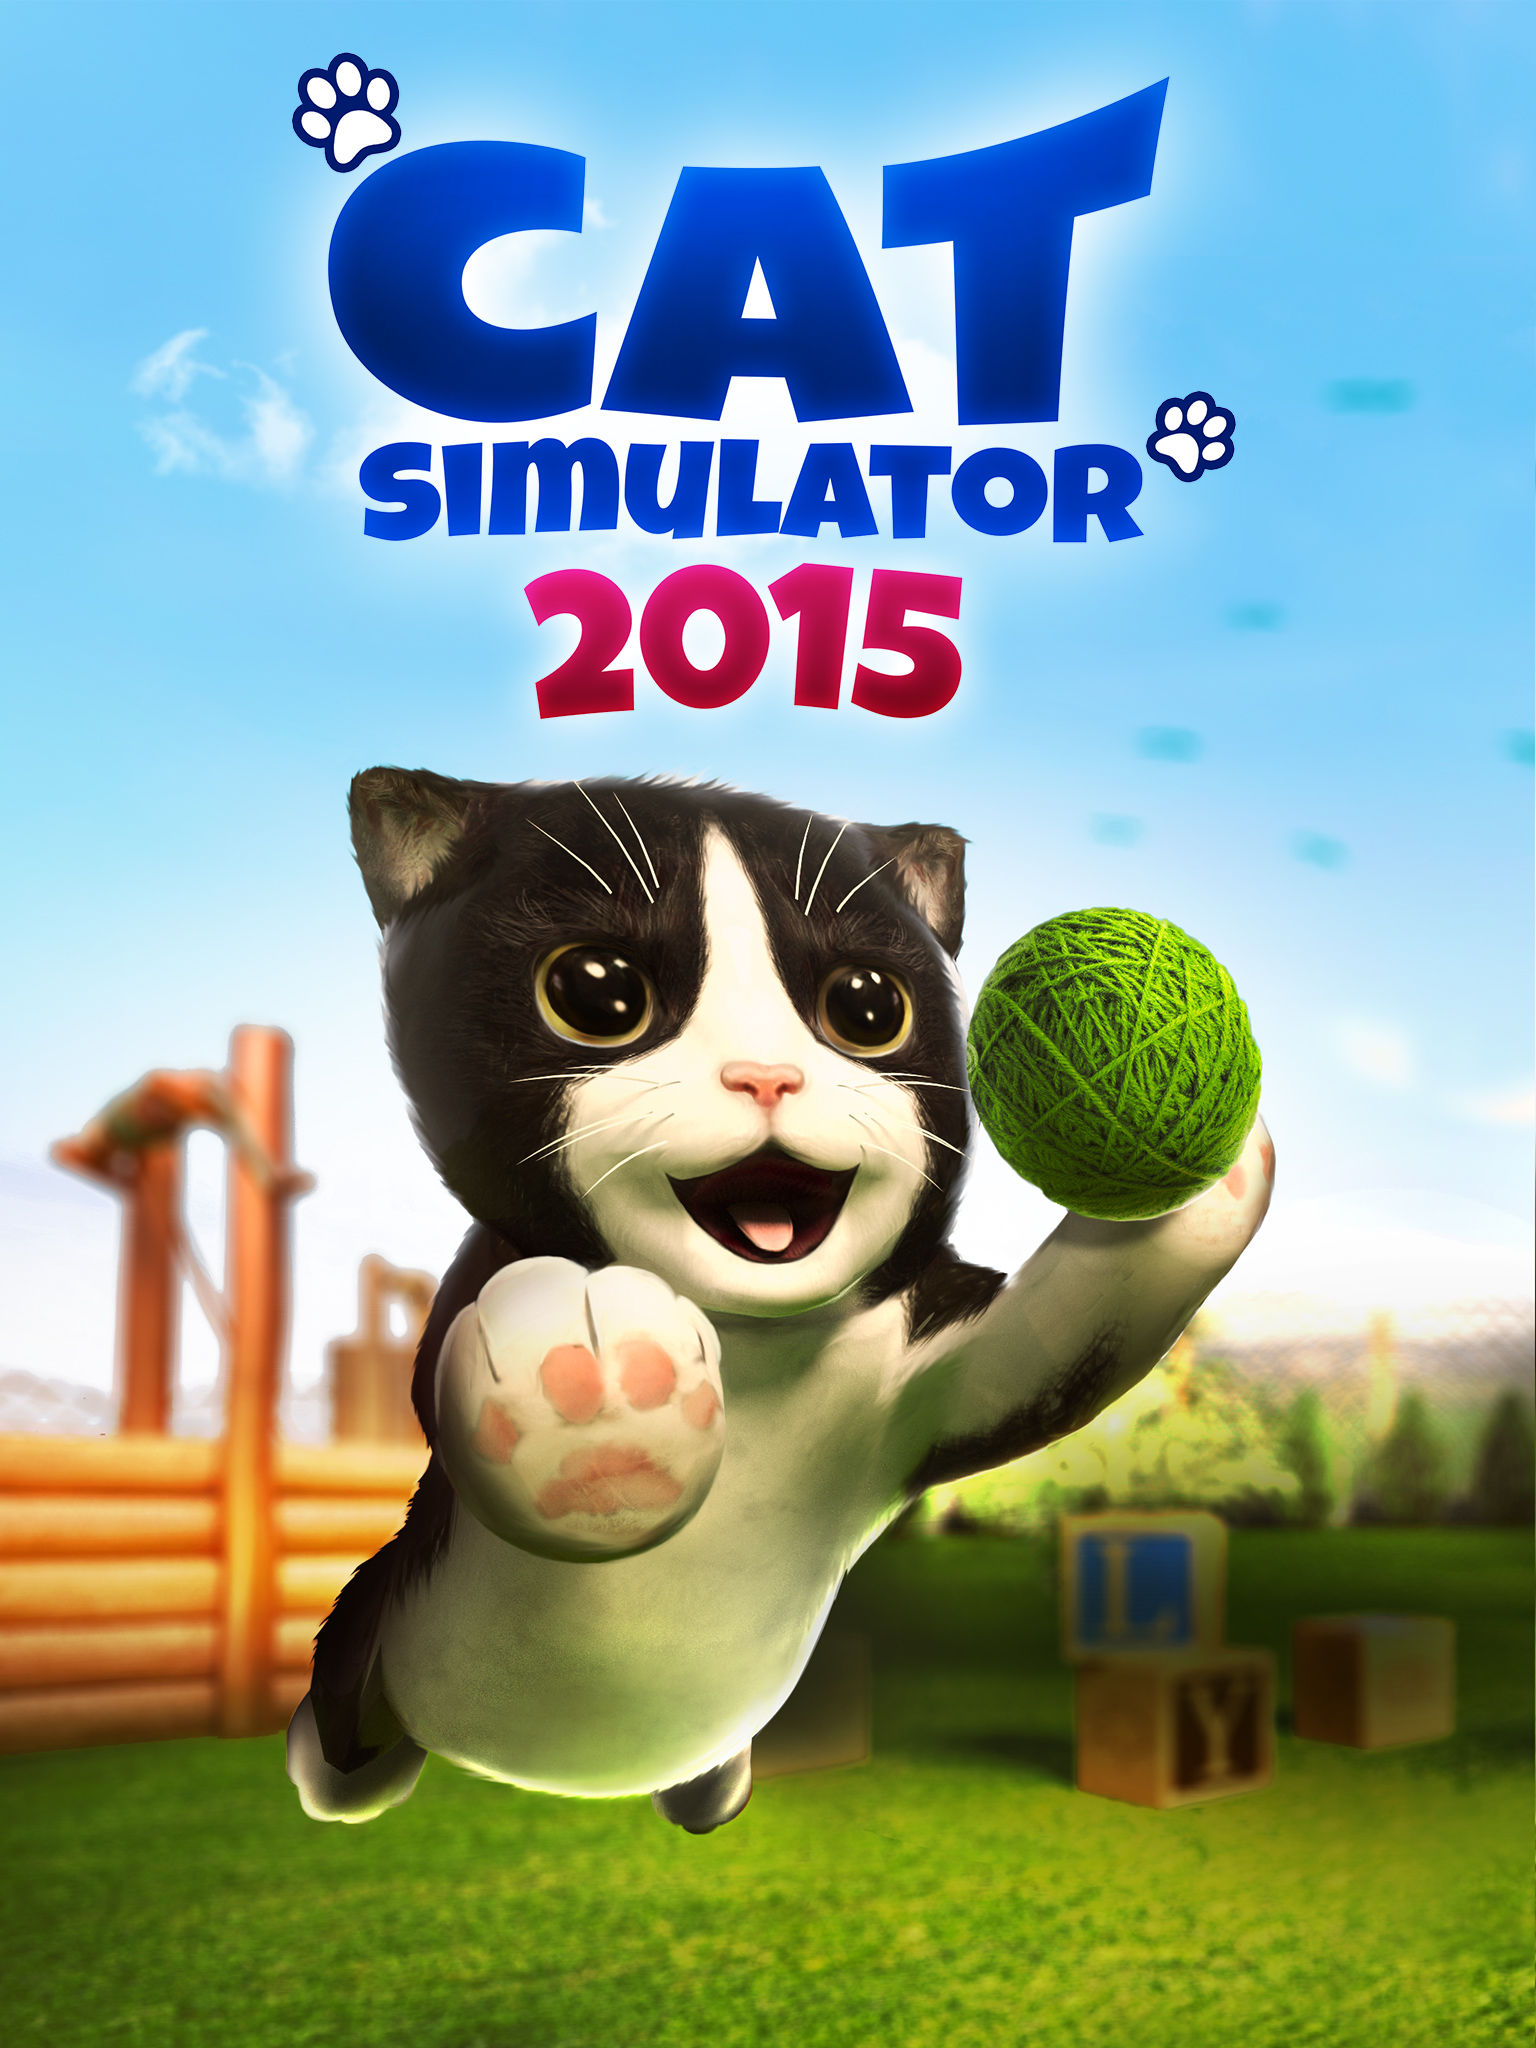 Codes In Cat Simulator